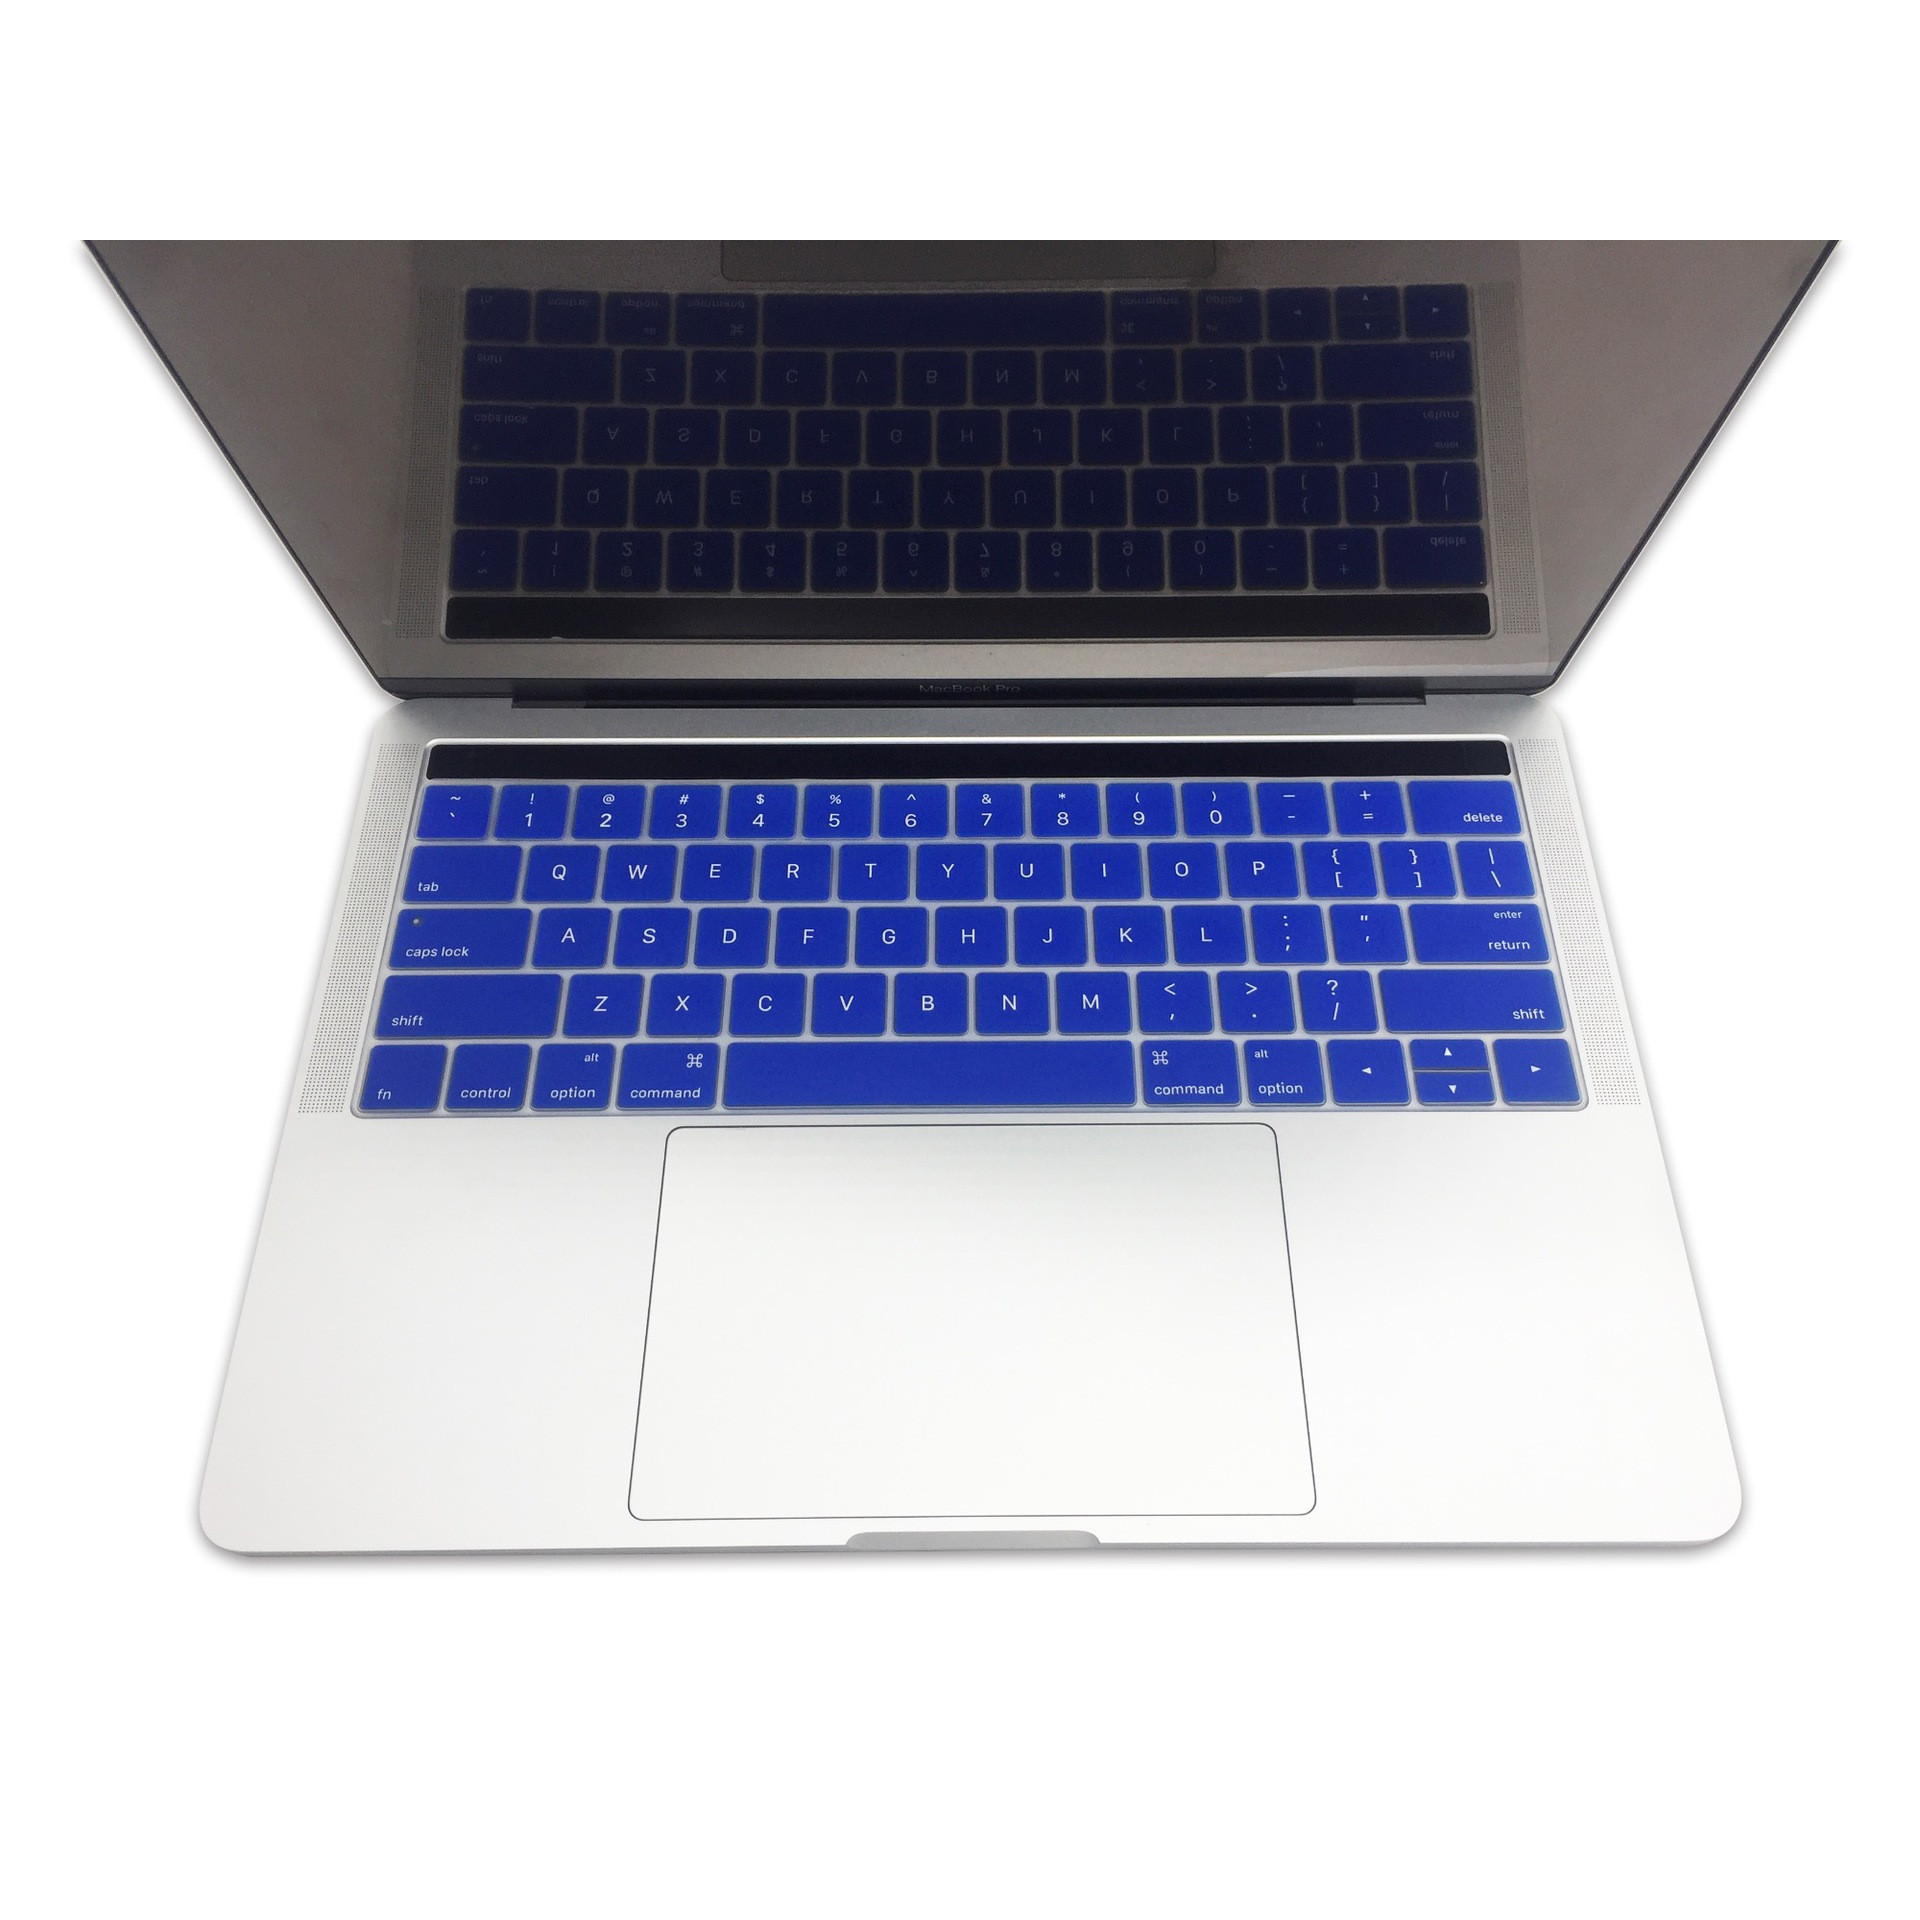 Miếng lót bàn phím in chữ Silicon skin keyboard Macbook Pro Retina 15 Inch có thể rửa - Hàng Chính Hãng